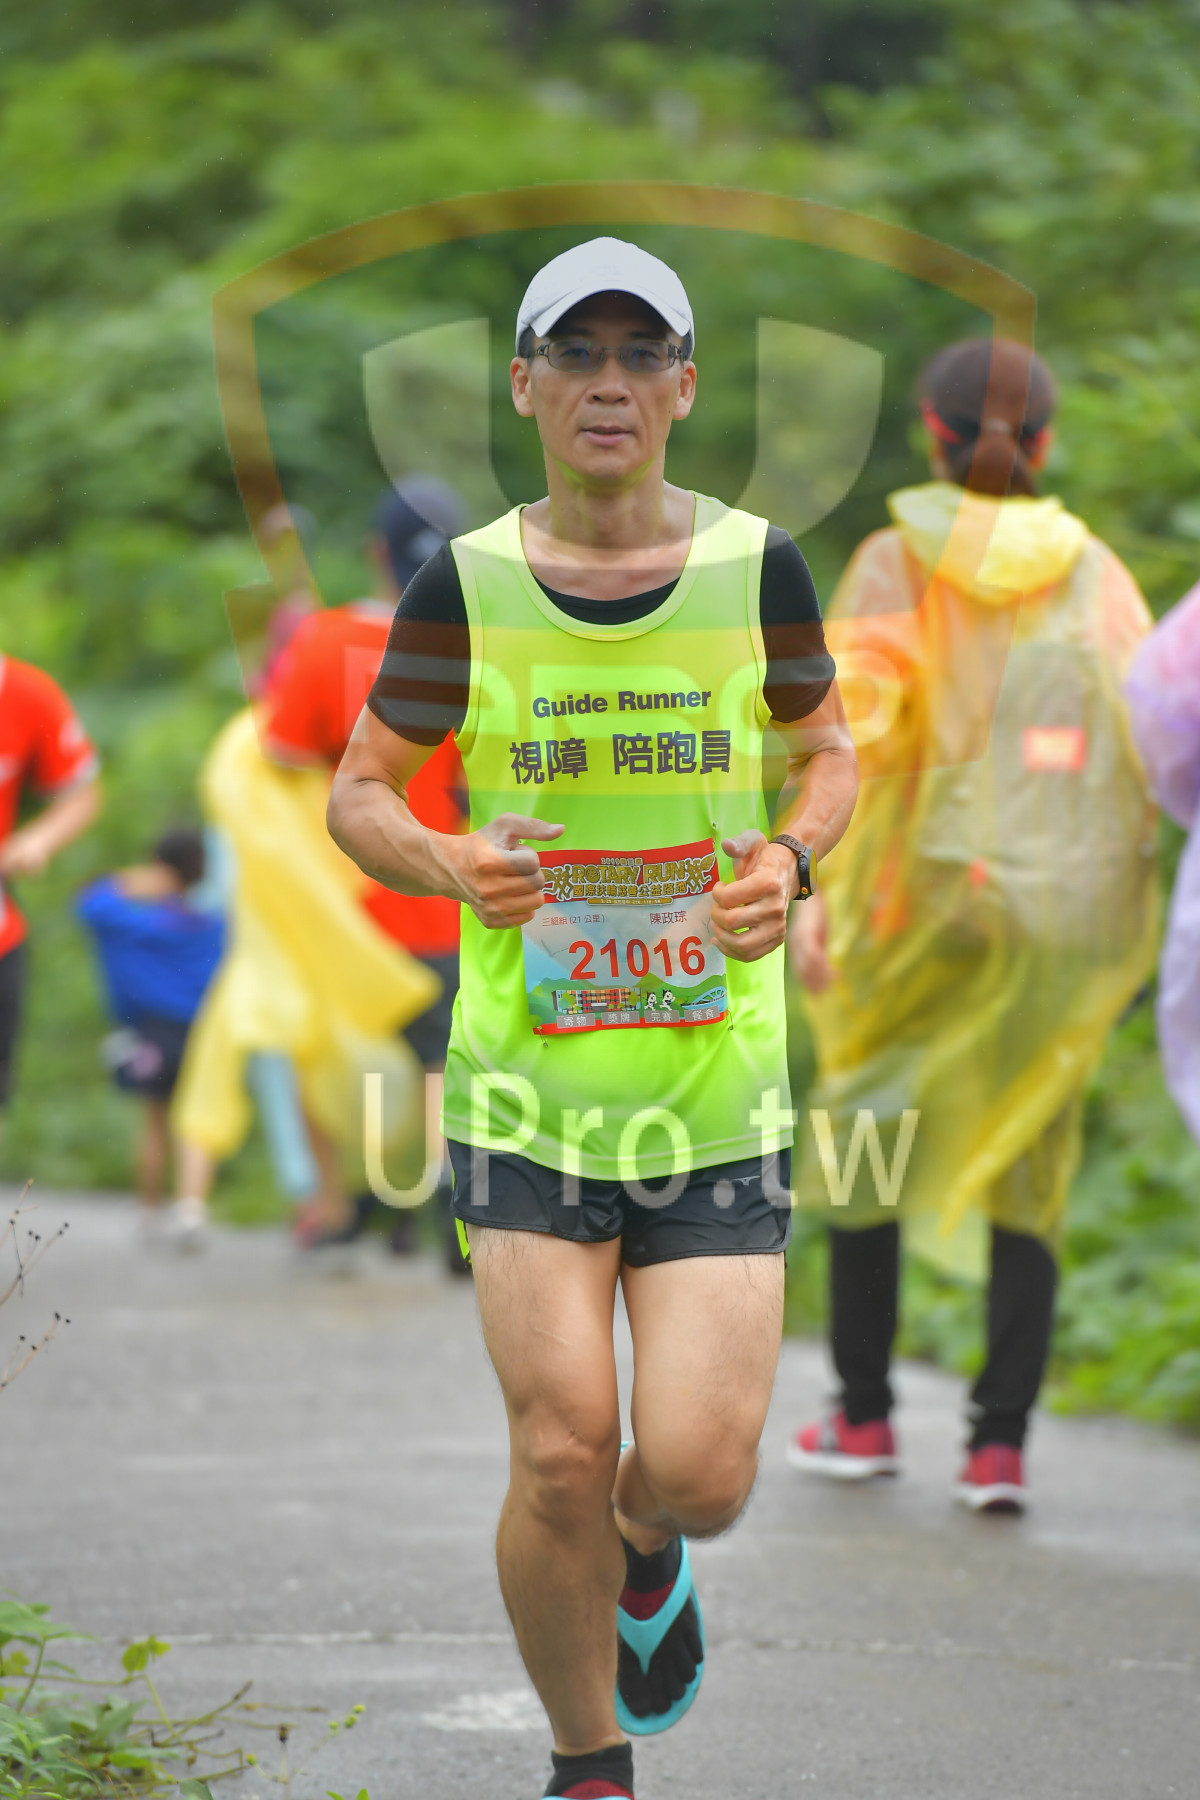 Guide Runner,,21,21016|